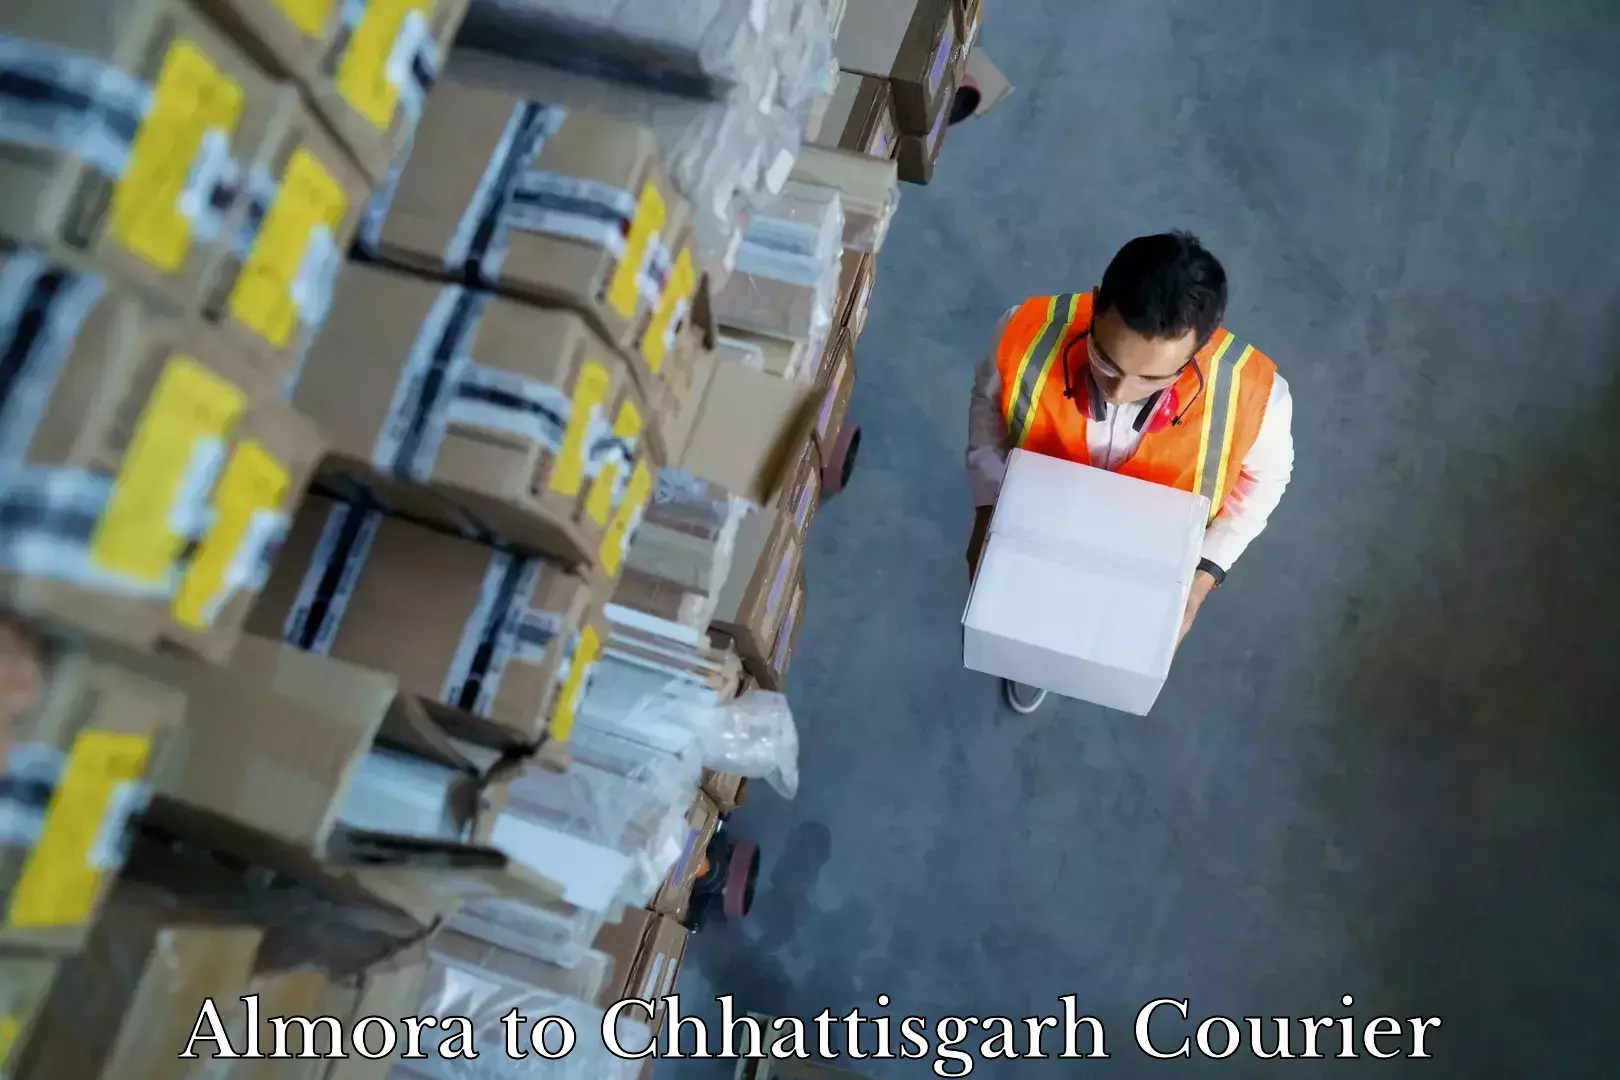 Trusted moving company Almora to Chhattisgarh